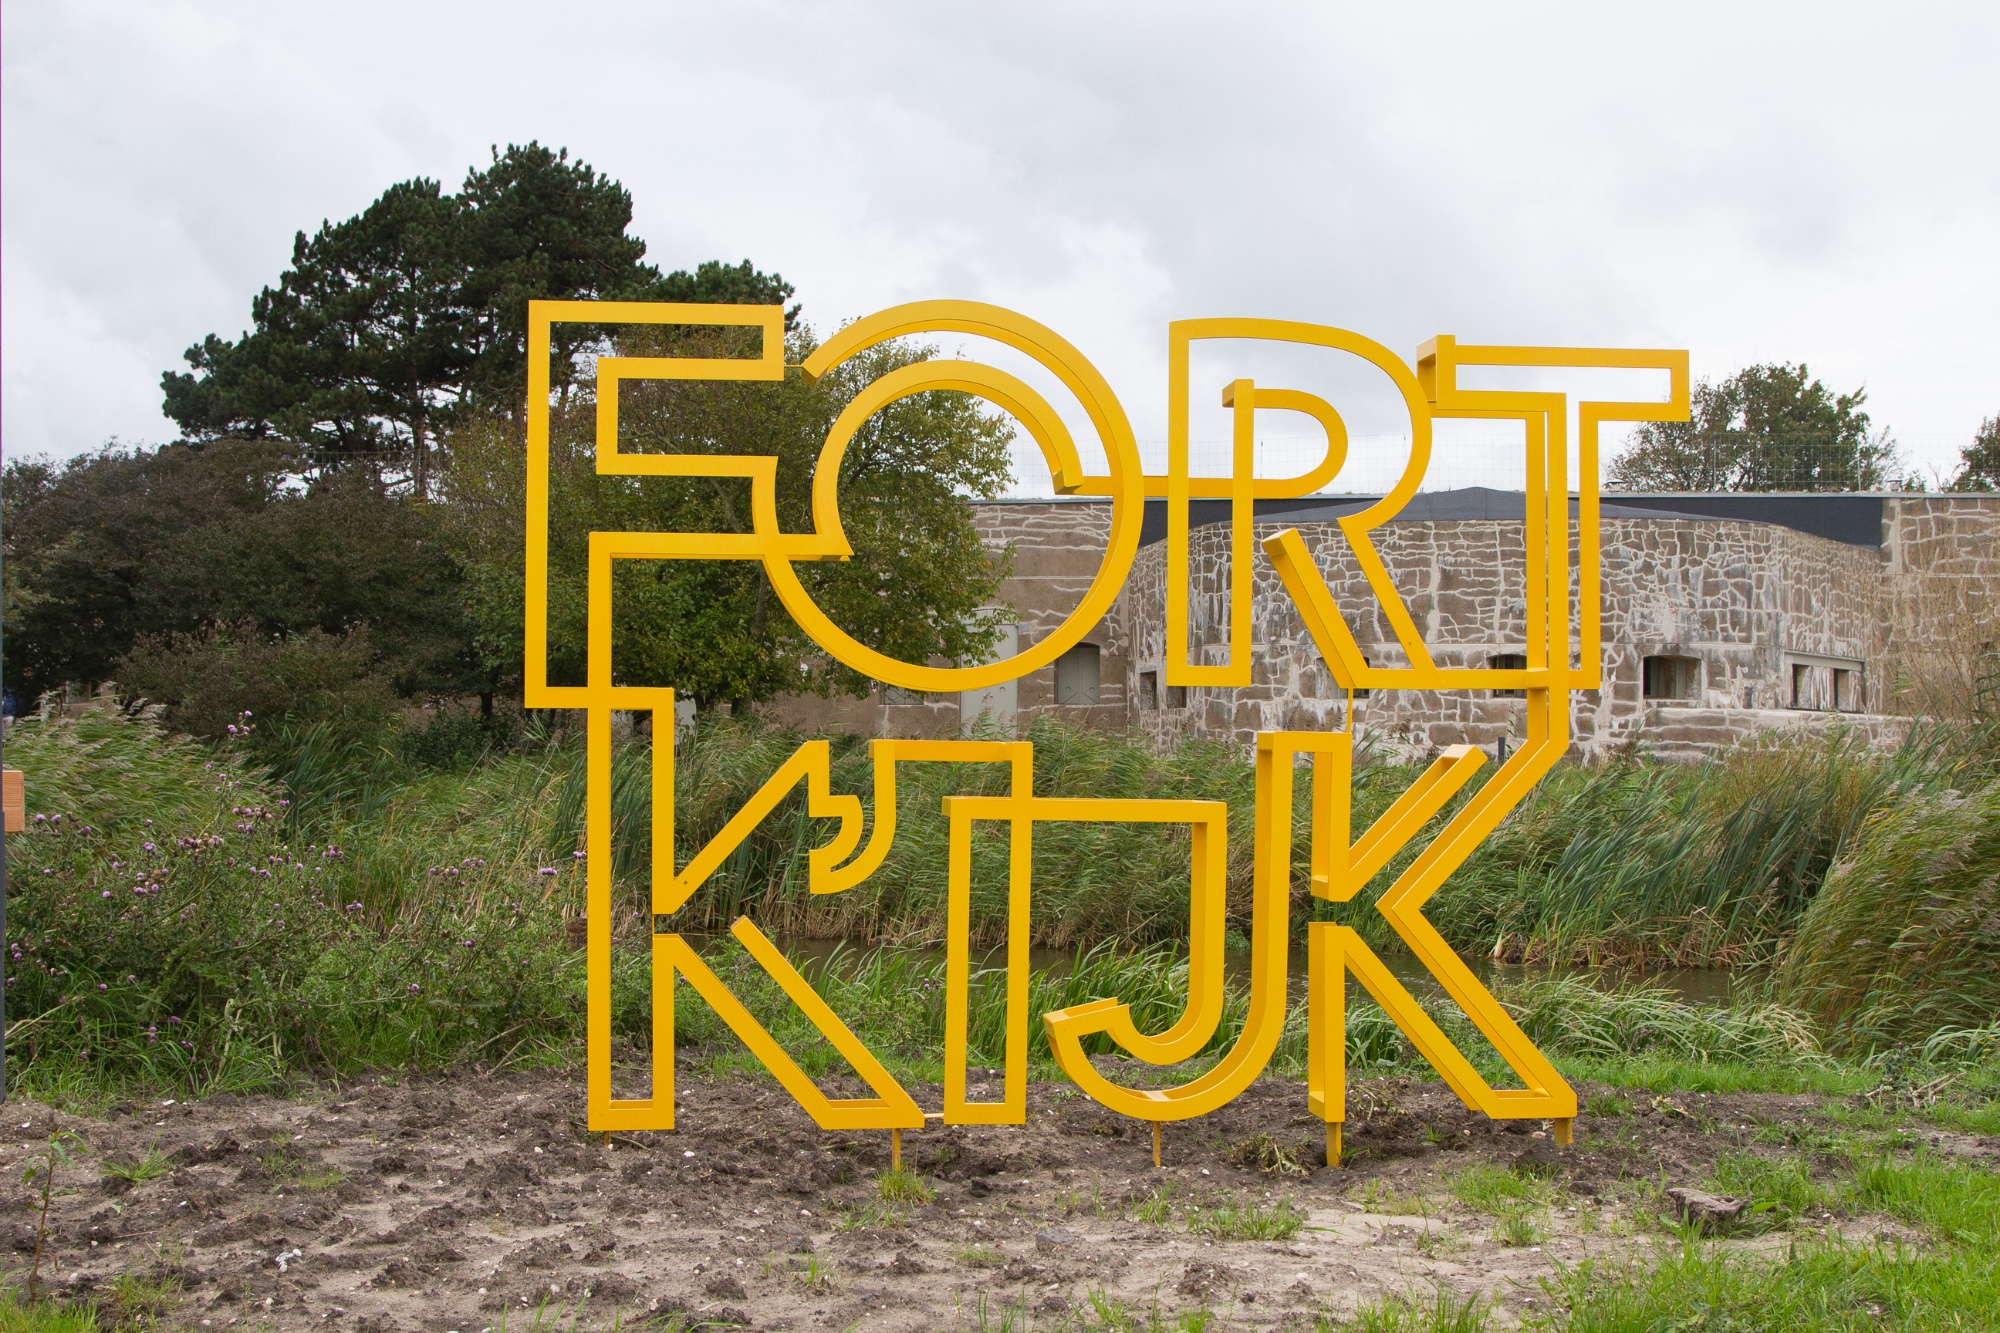 Fort K'IJK (foto: Anita Webbe)